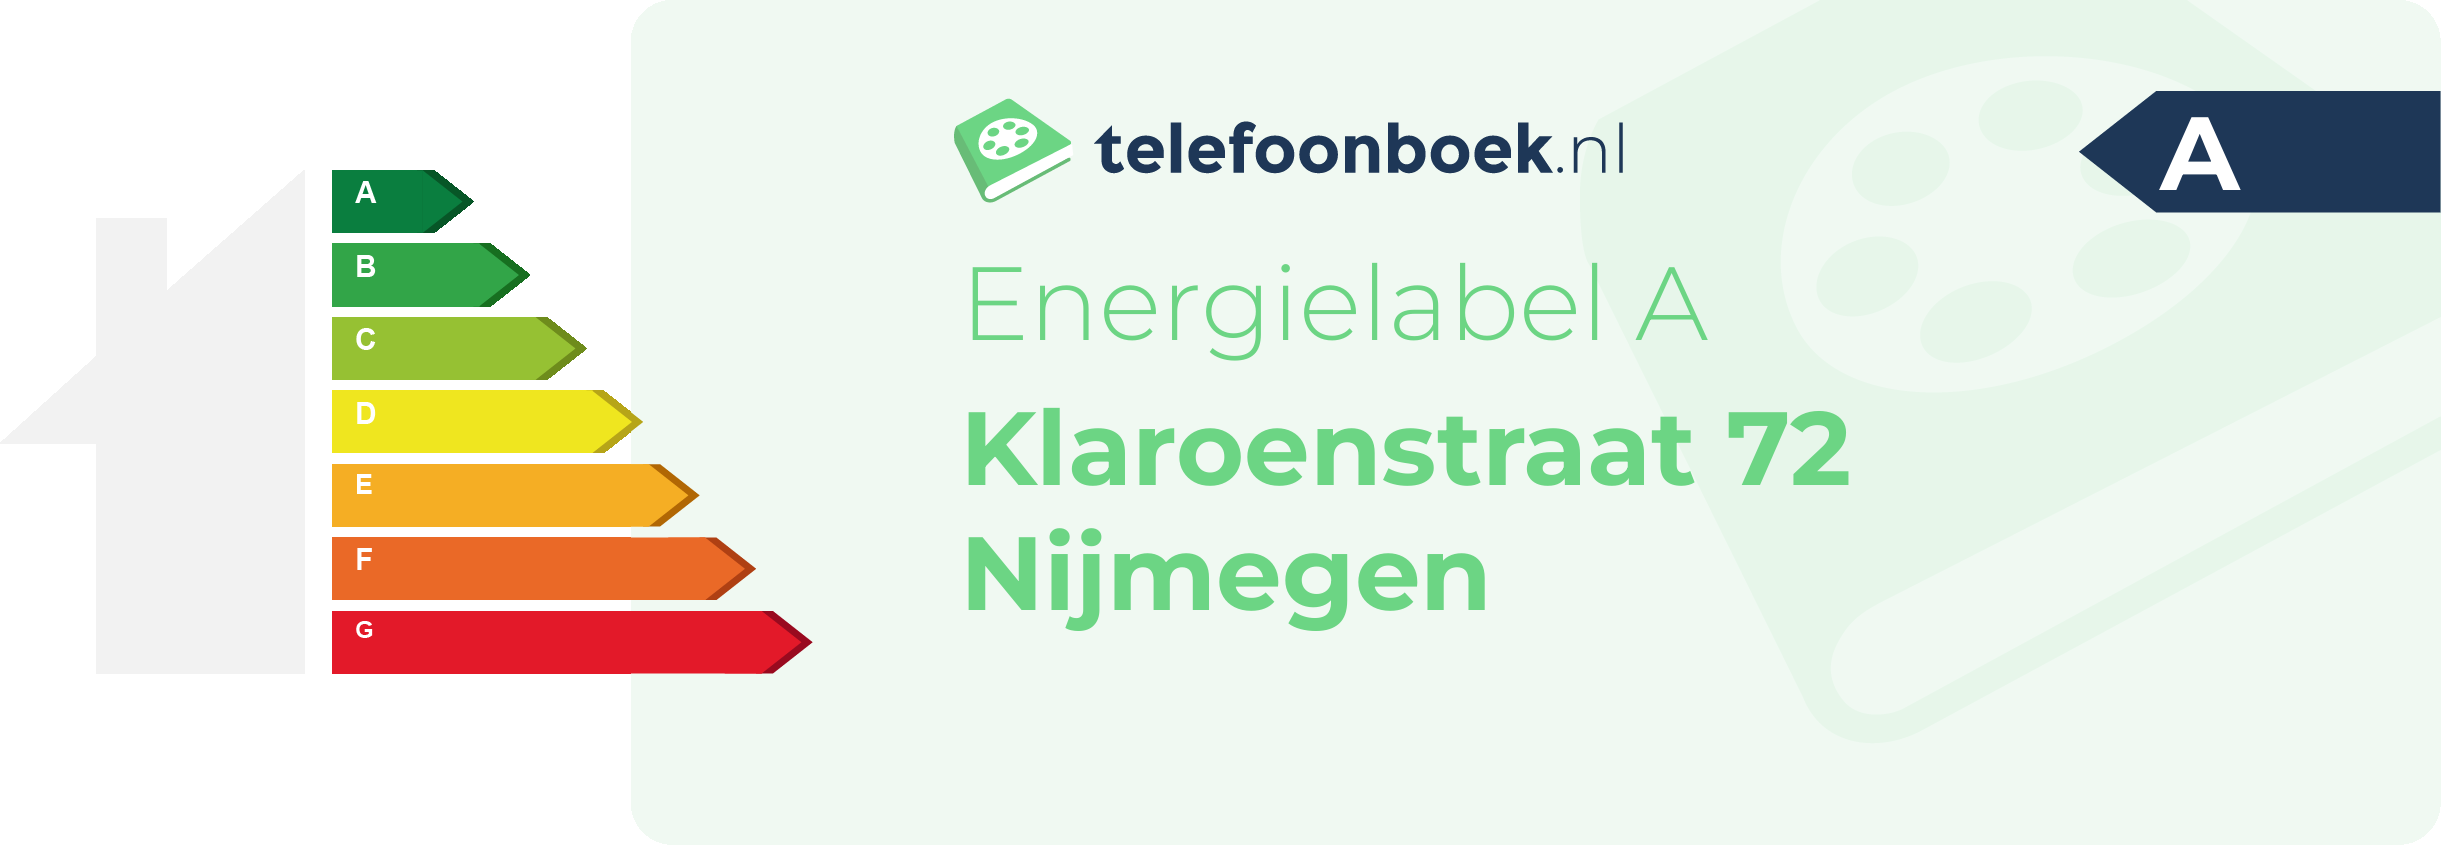 Energielabel Klaroenstraat 72 Nijmegen